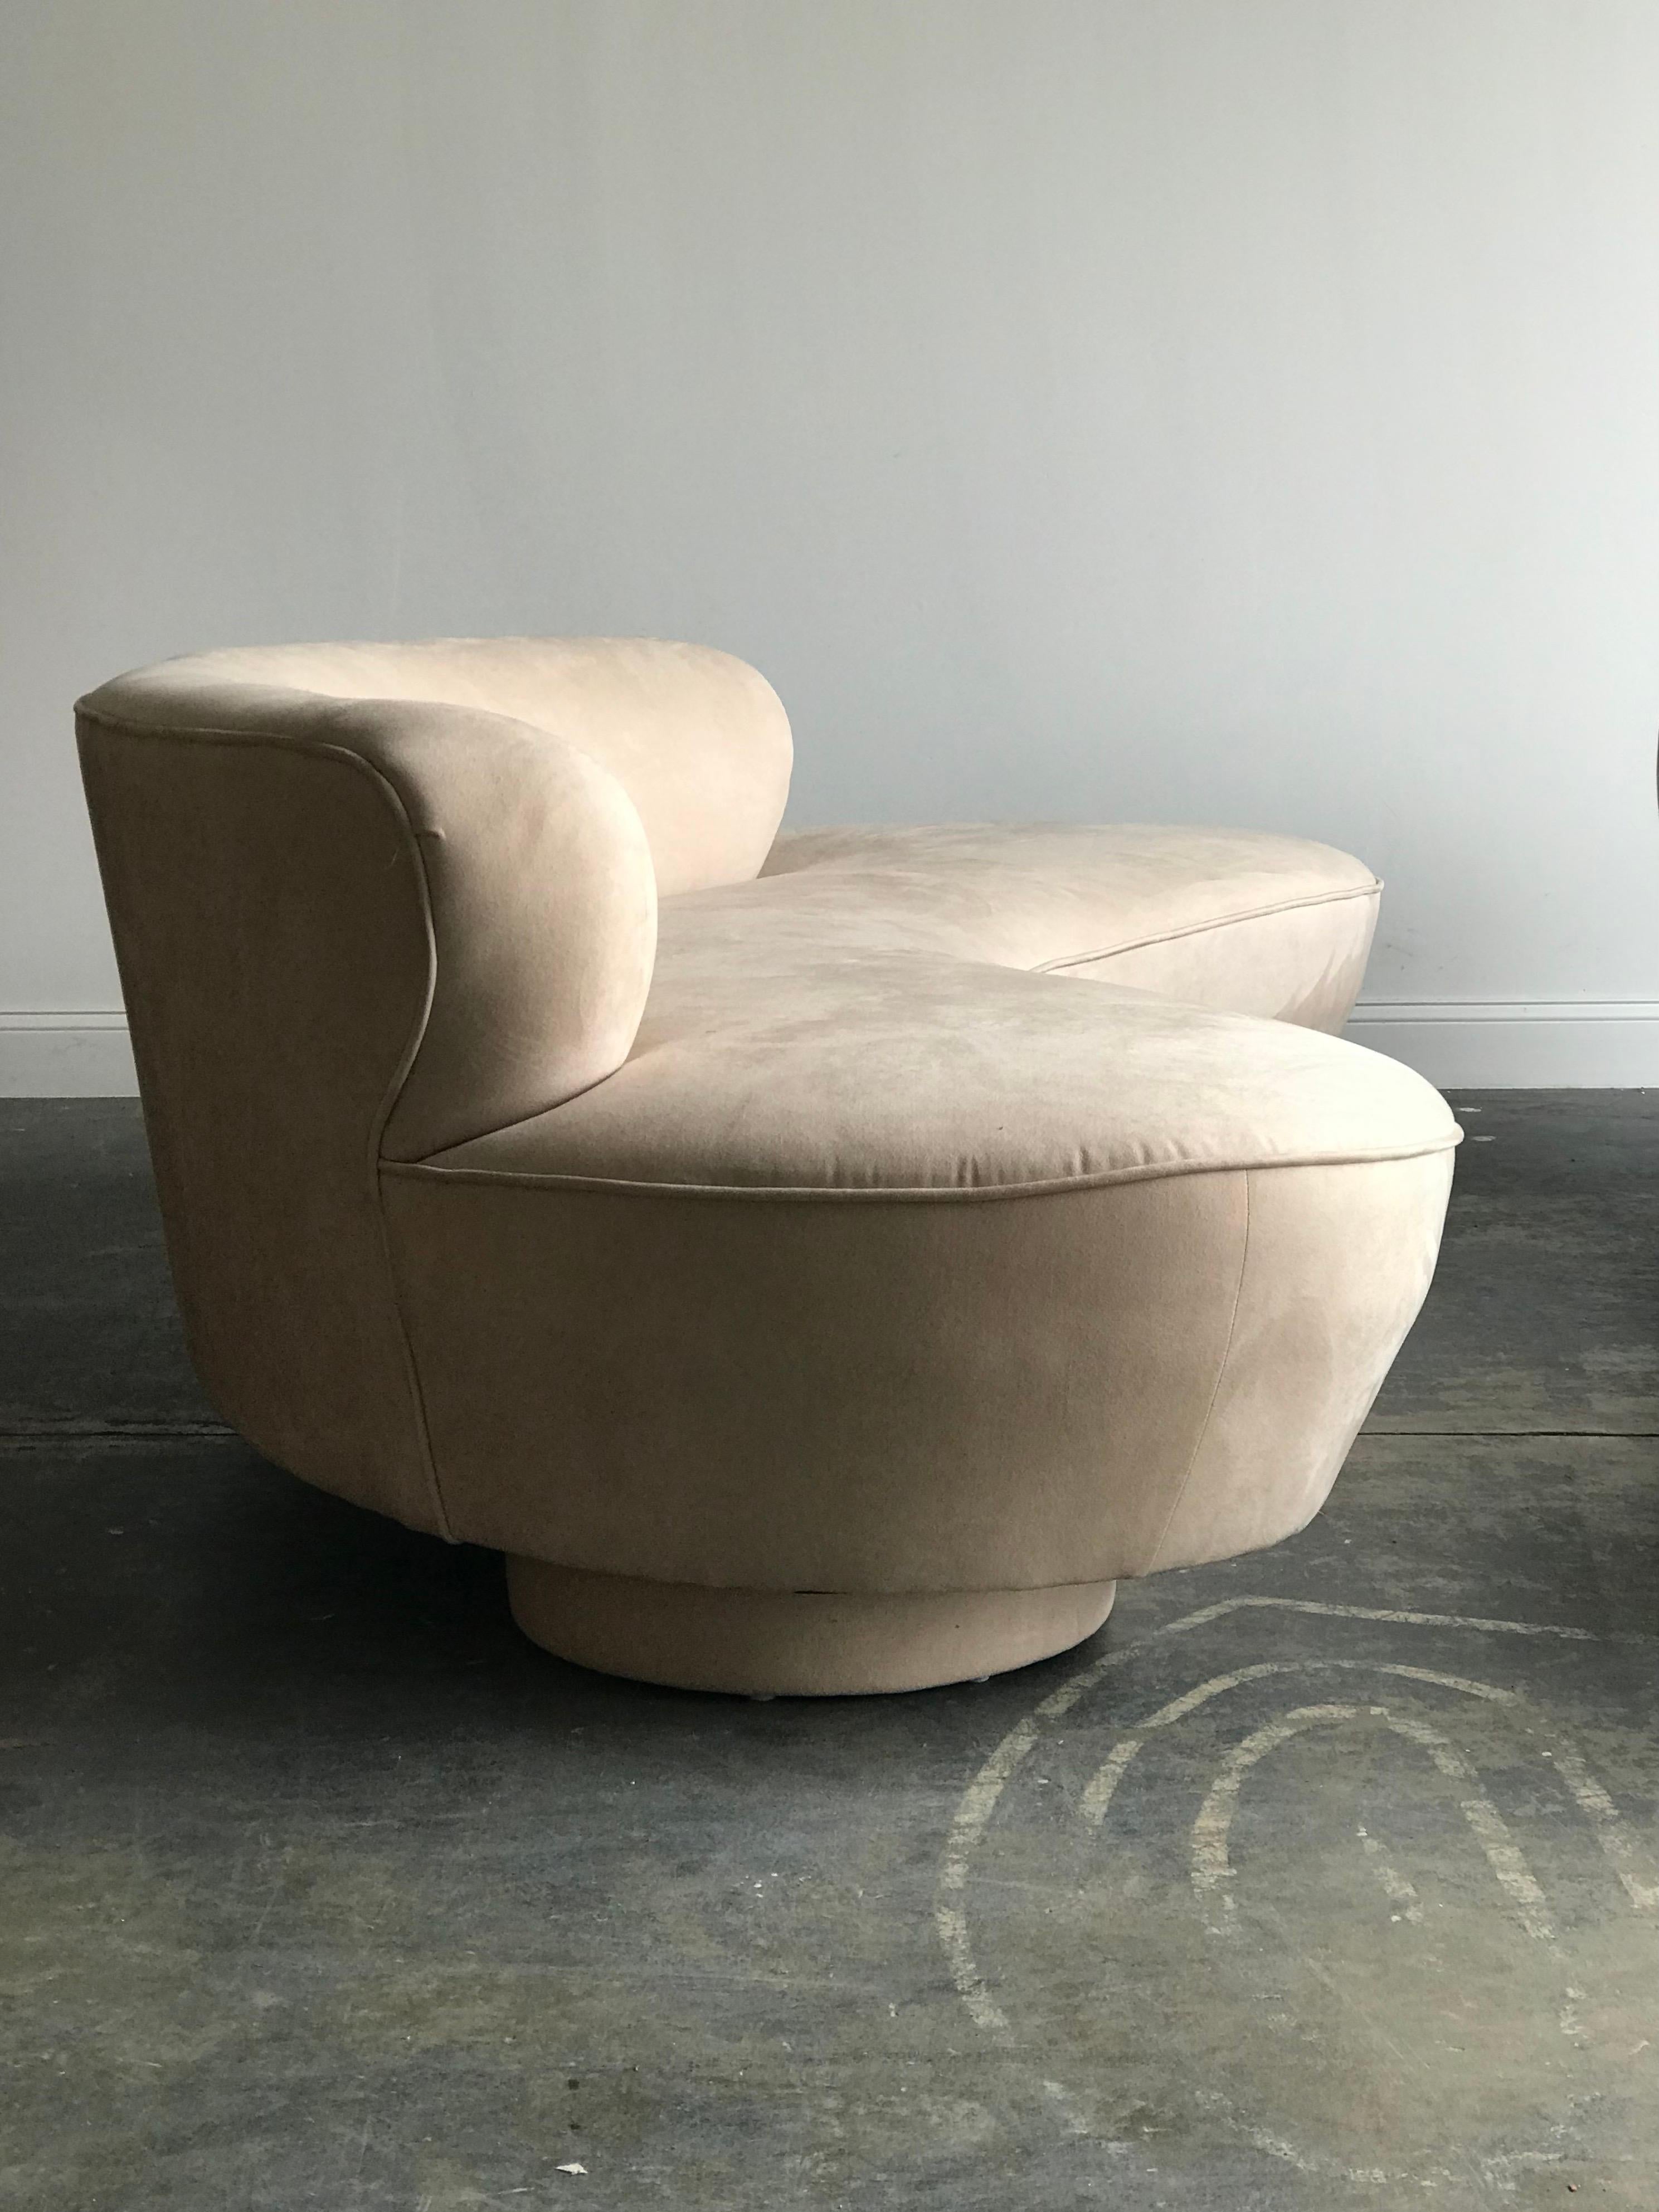 nieuwe design stoelvorm buymouldsonline.nl